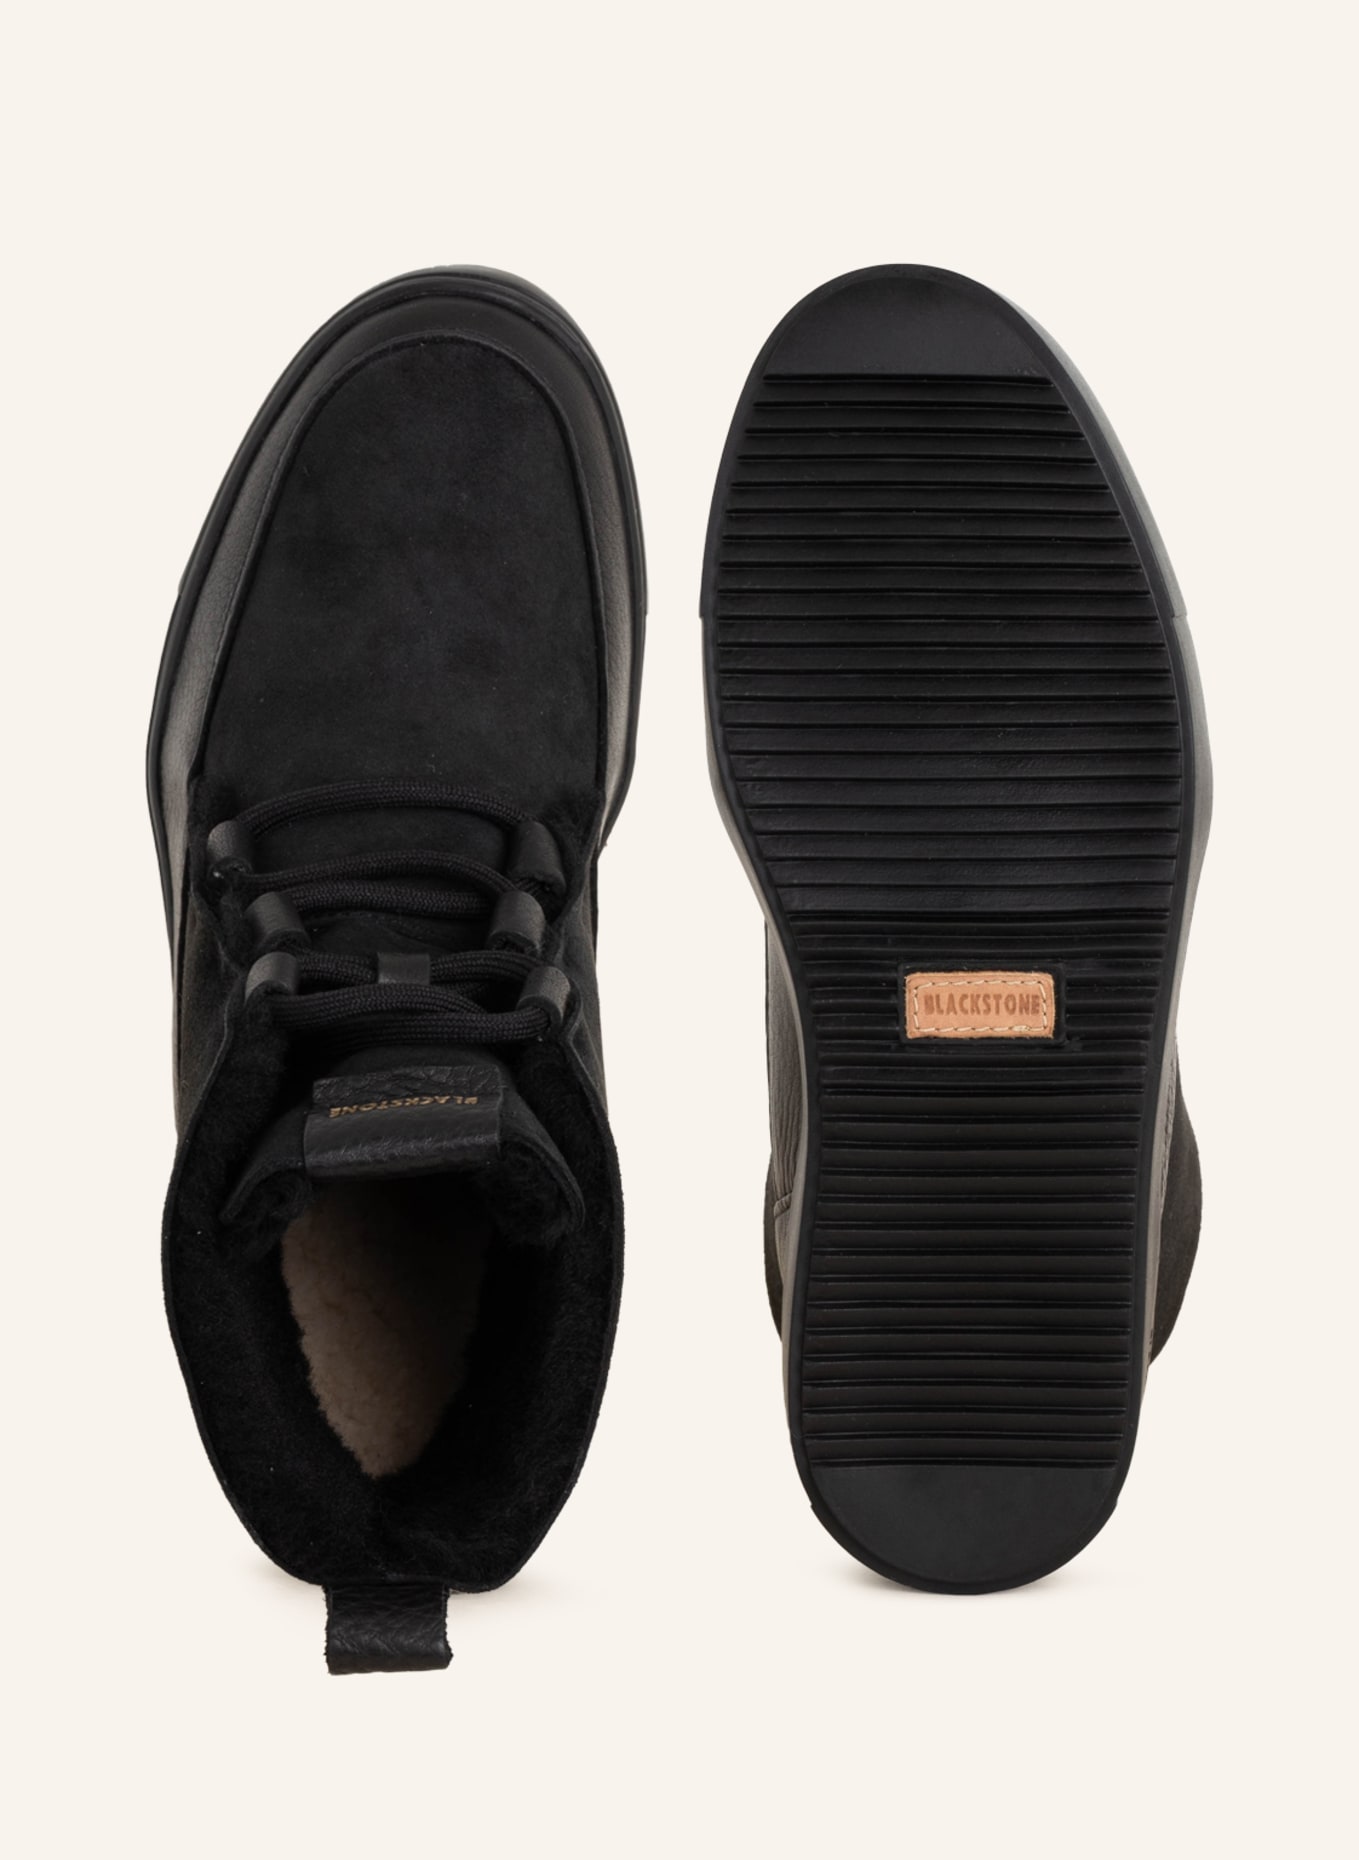 BLACKSTONE Lace-up boots, Color: BLACK (Image 5)